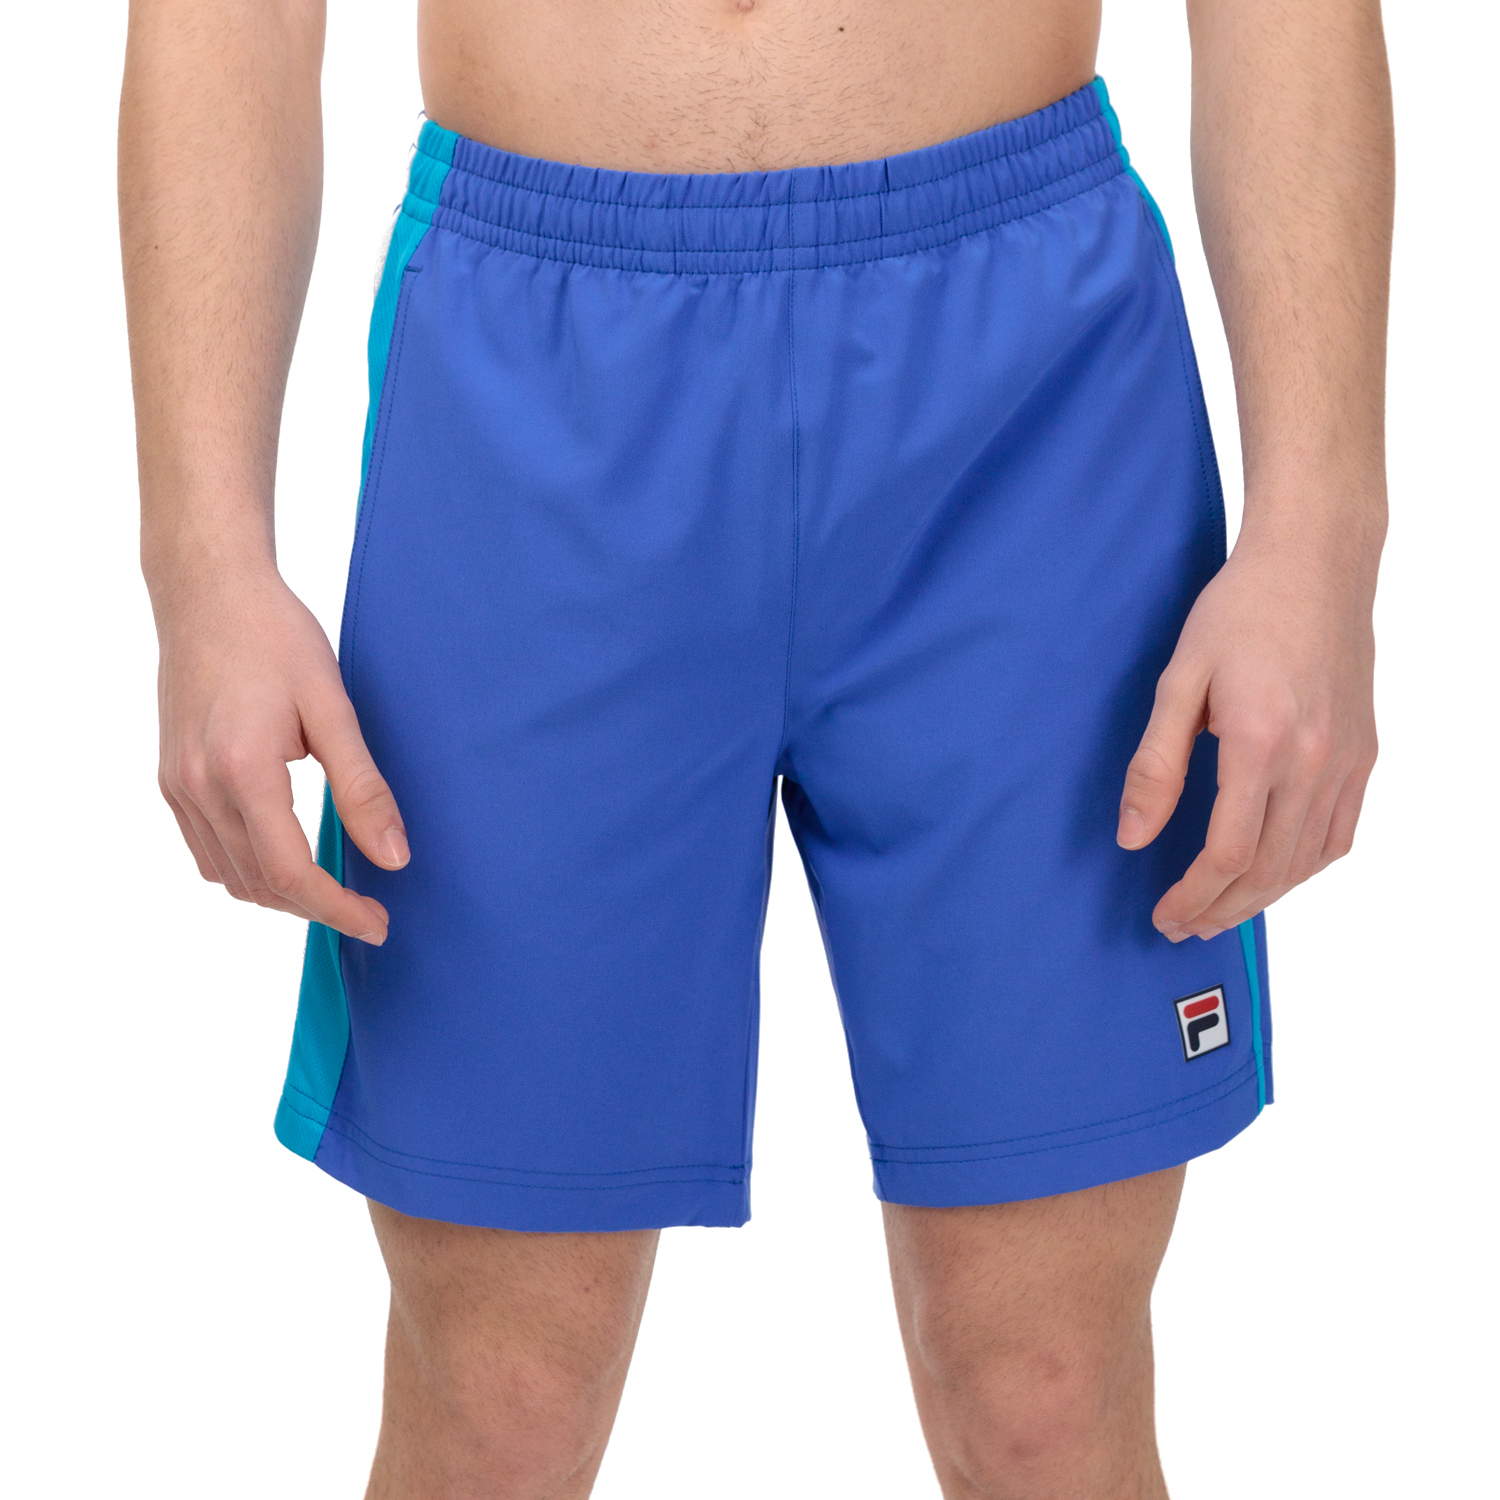 plakband inzet Spreek luid Fila Nicolo 8in Men's Tennis Shorts - Dazzling Blue